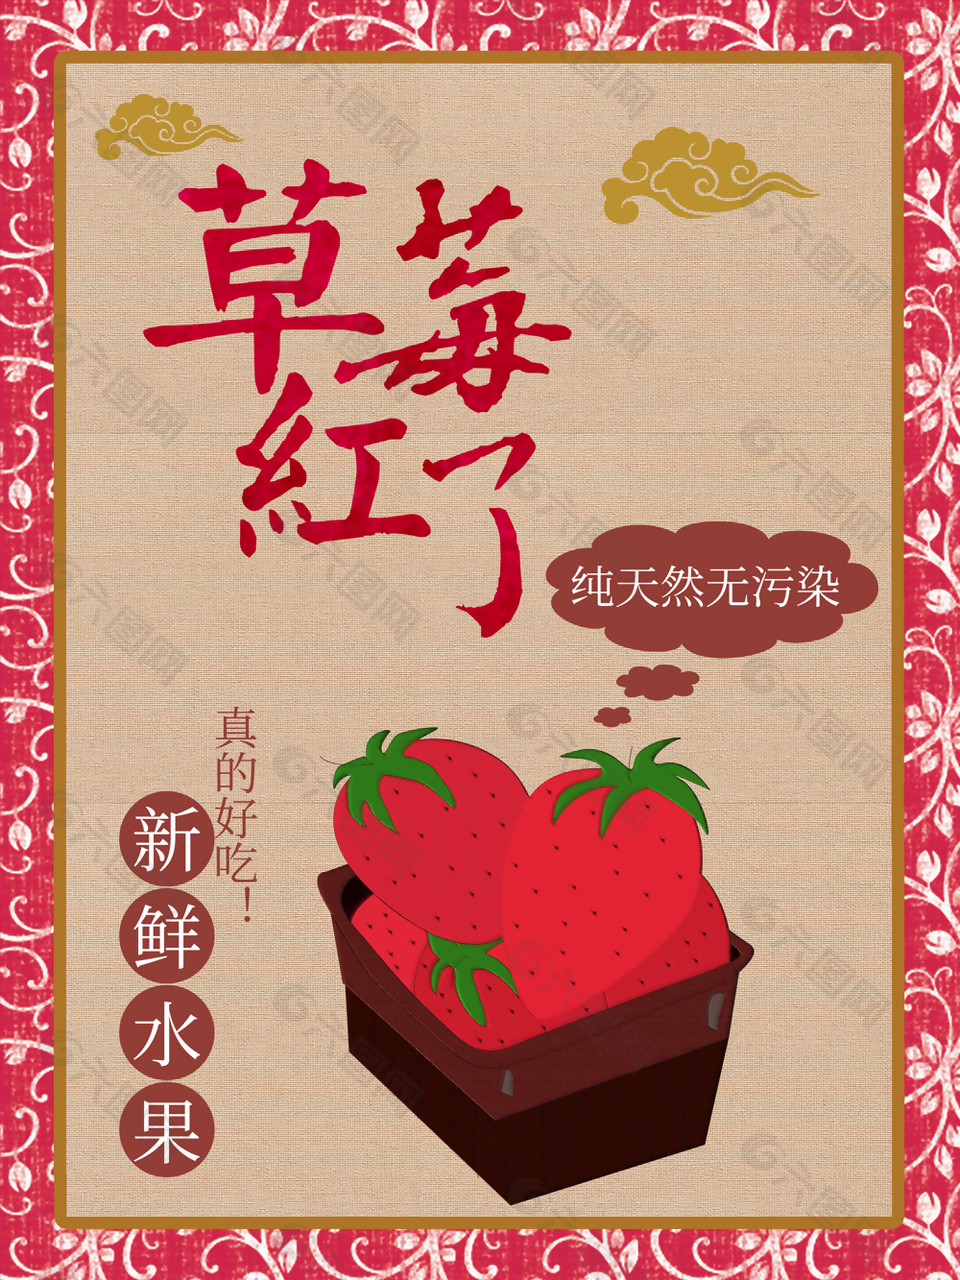 手绘中国风纯天然草莓活动海报图设计